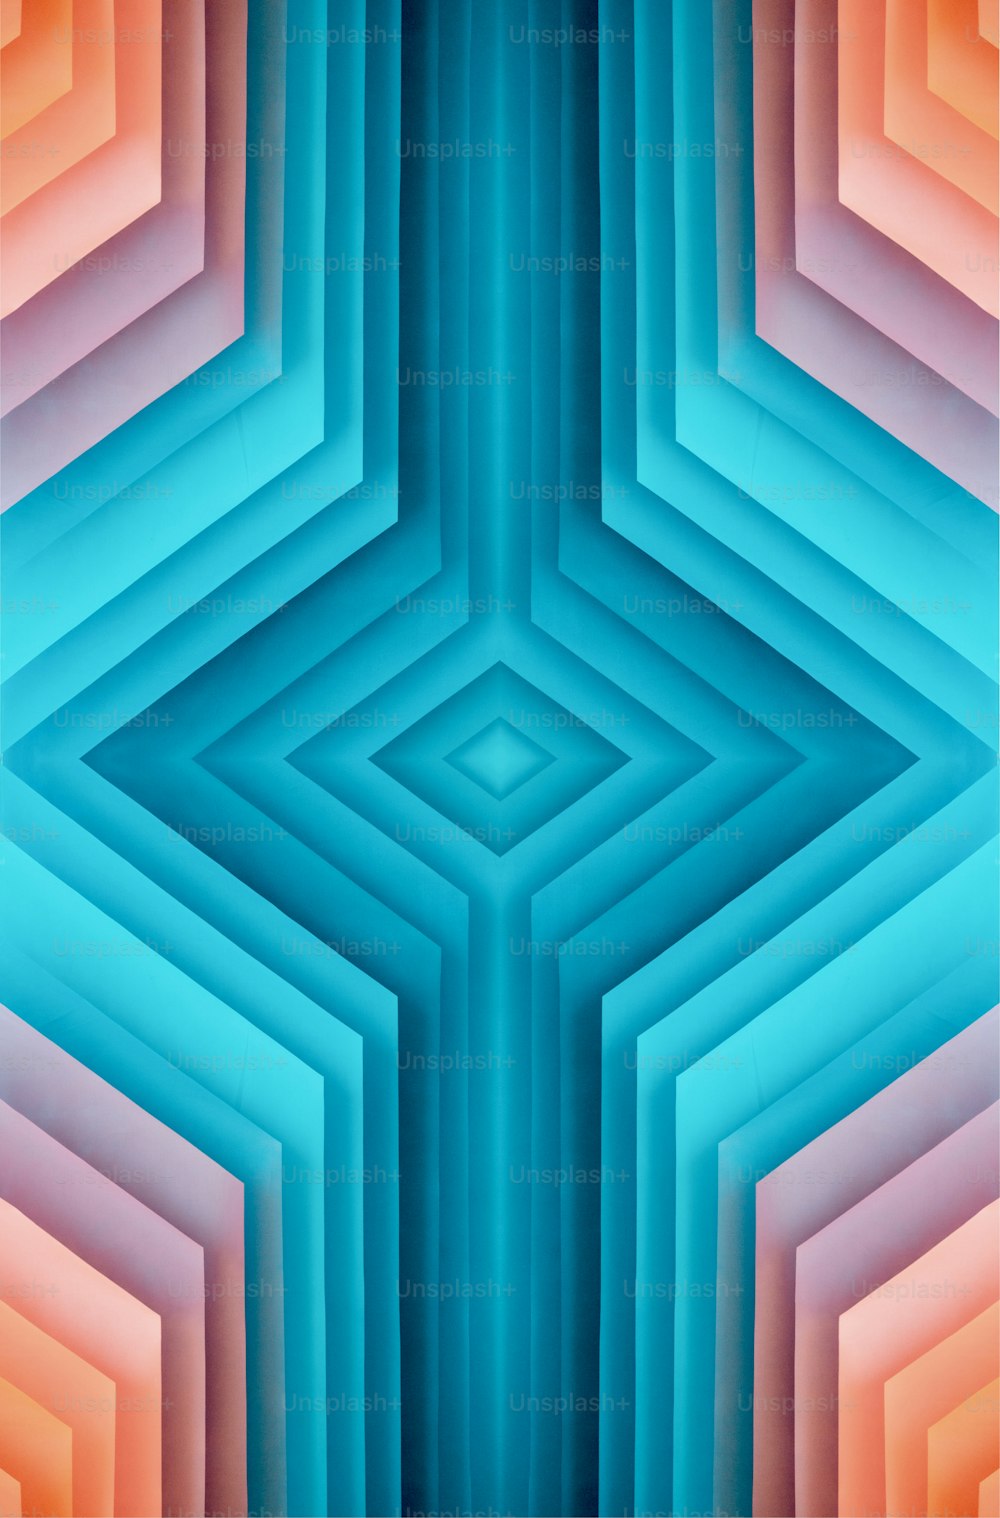 Una imagen abstracta de un patrón azul, naranja y rosa